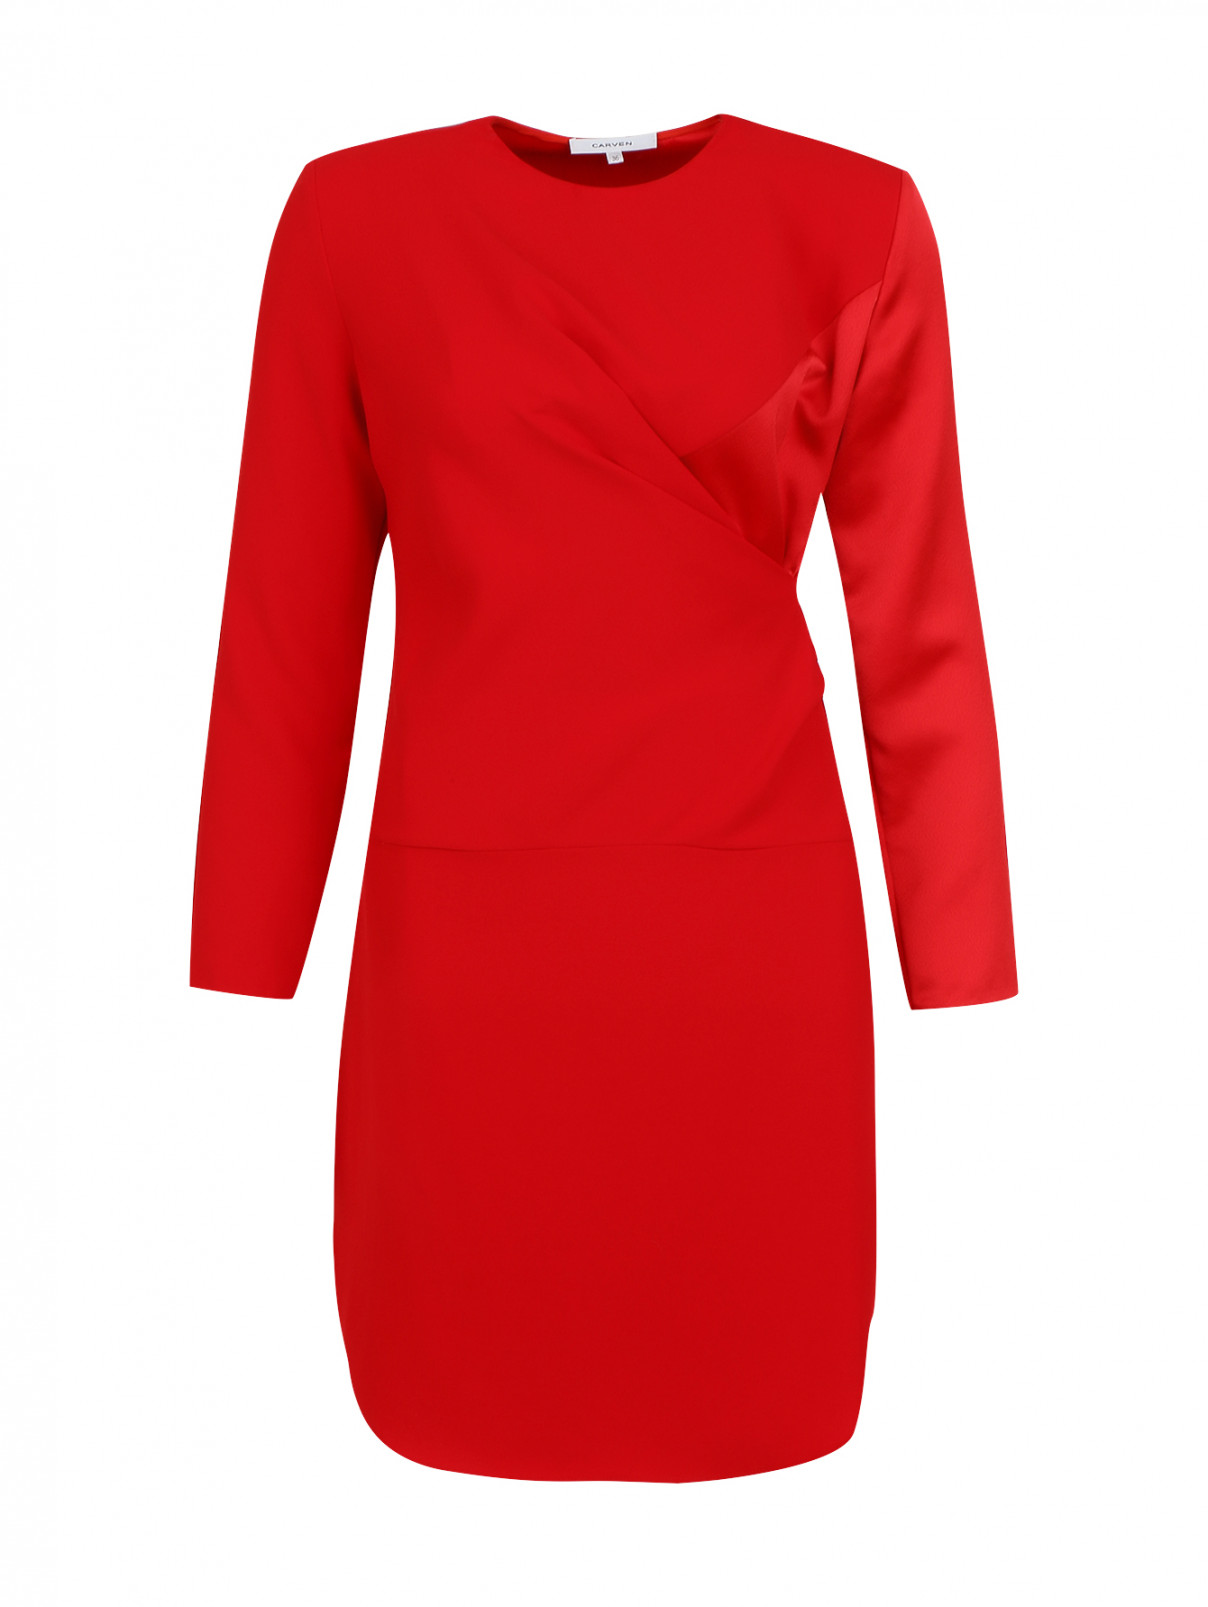 Мини-платье с длинными рукавами Carven  –  Общий вид  – Цвет:  Красный